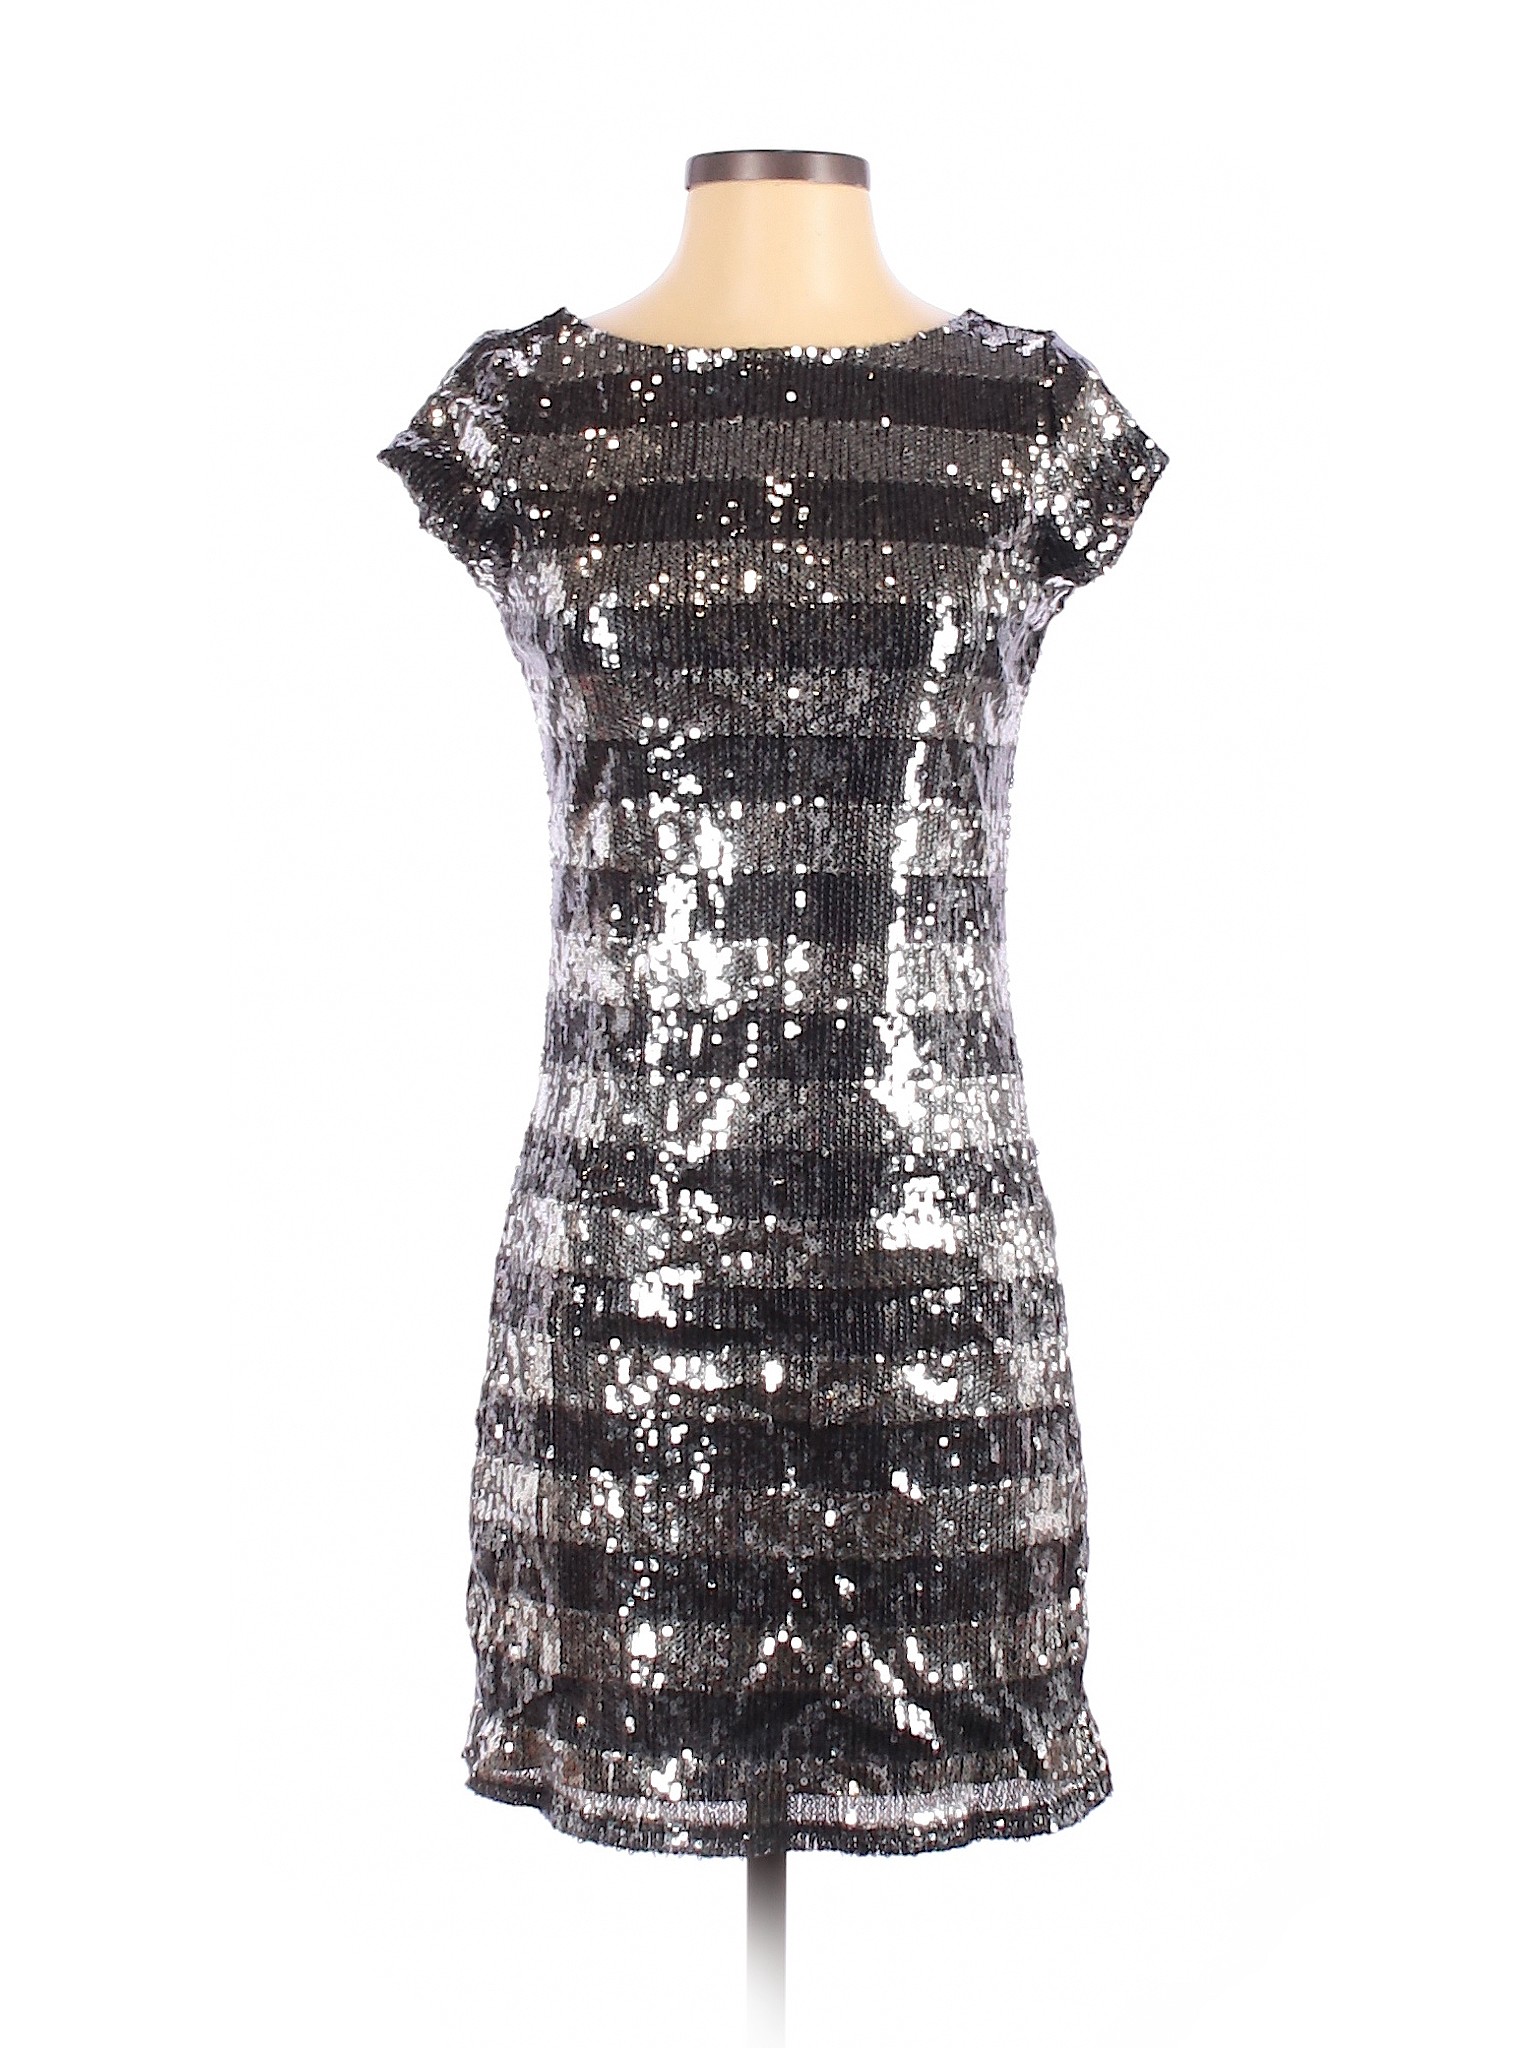 White House Black Market Women Silver Cocktail Dress XS | eBay